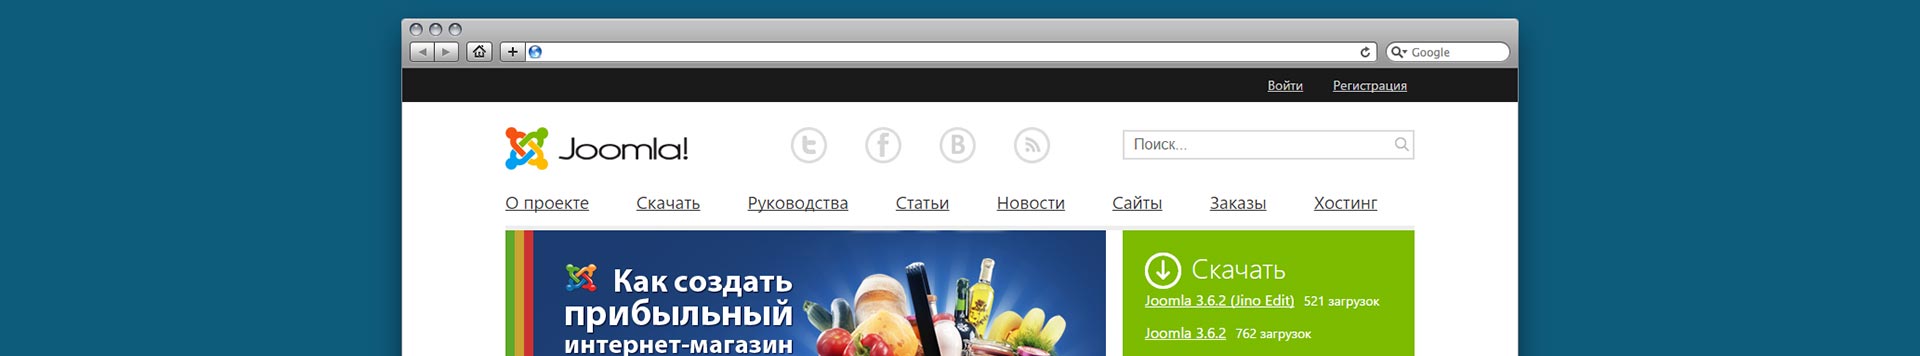 Redsoft выпустил новую версию портала Joomla.ru